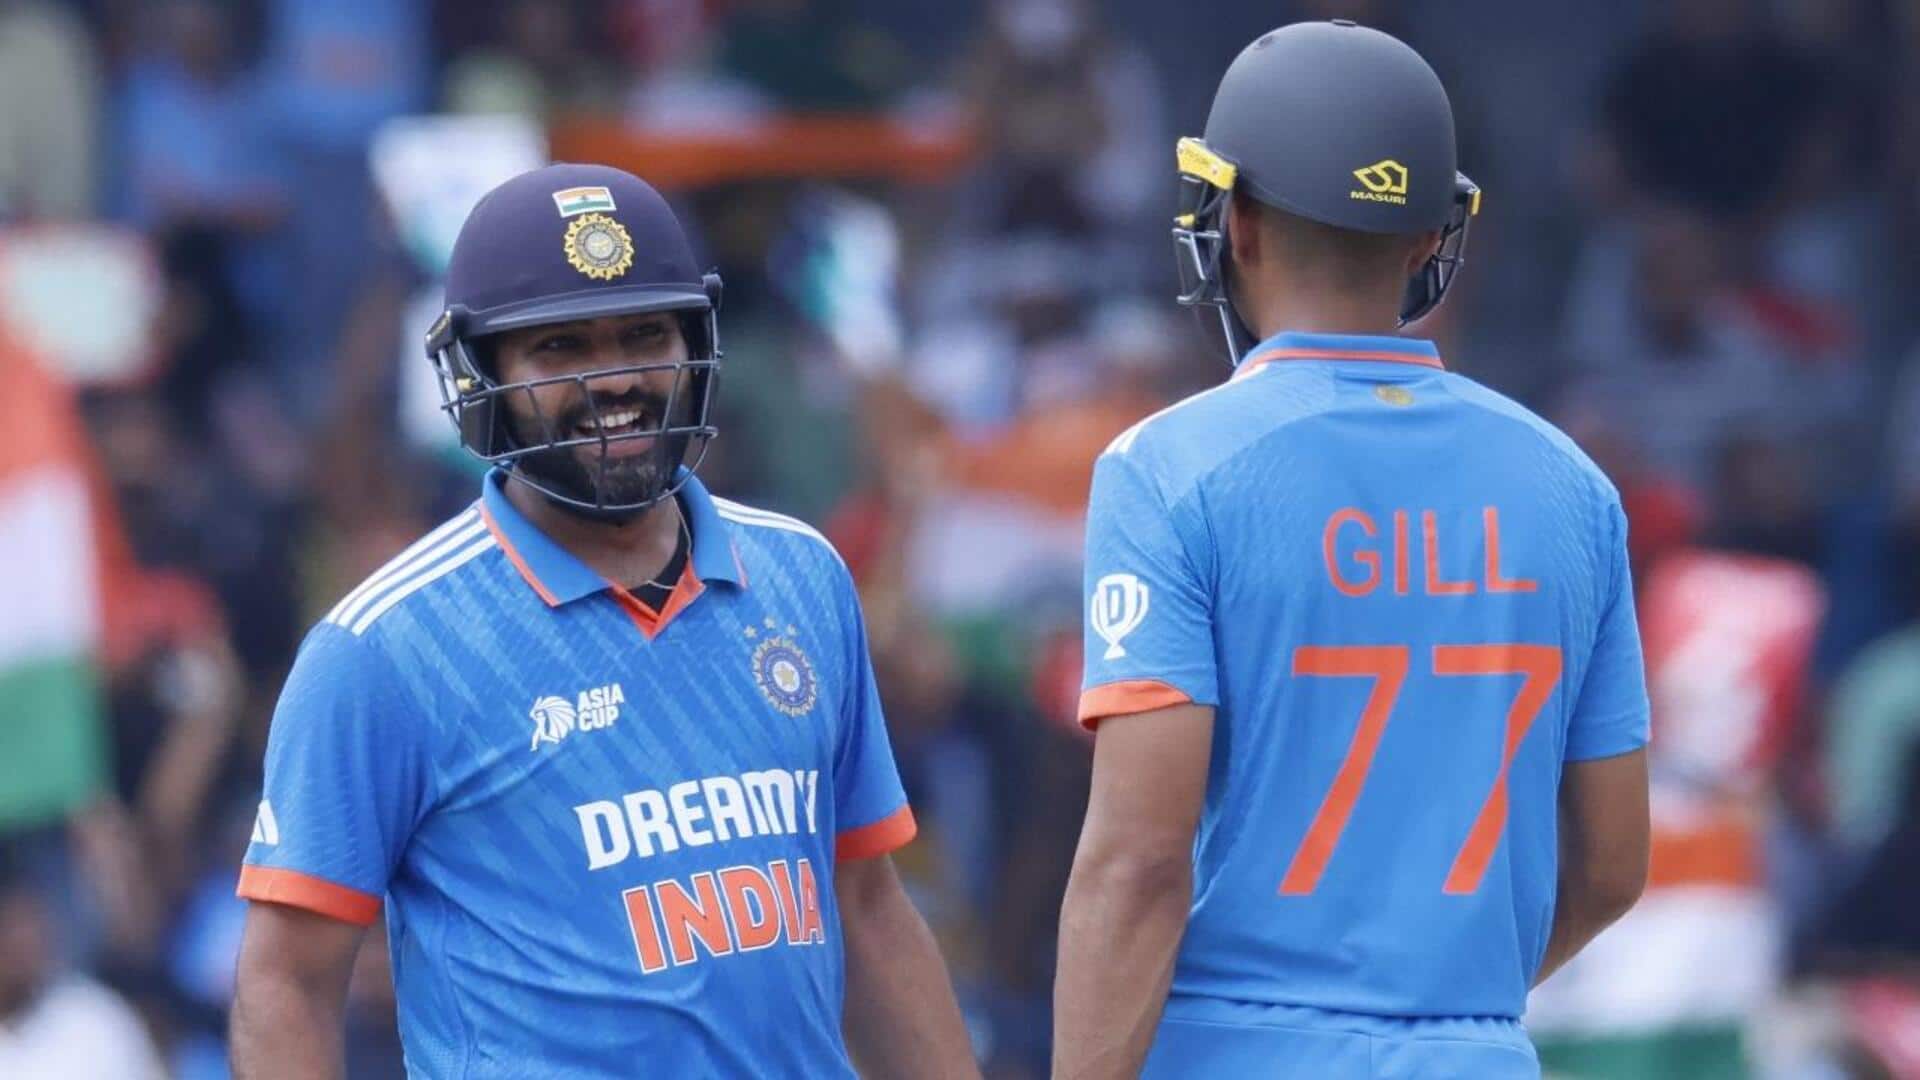 रोहित शर्मा श्रीलंका क्रिकेट टीम के लिए बन सकते हैं बड़ा खतरा, जानिए कारण 